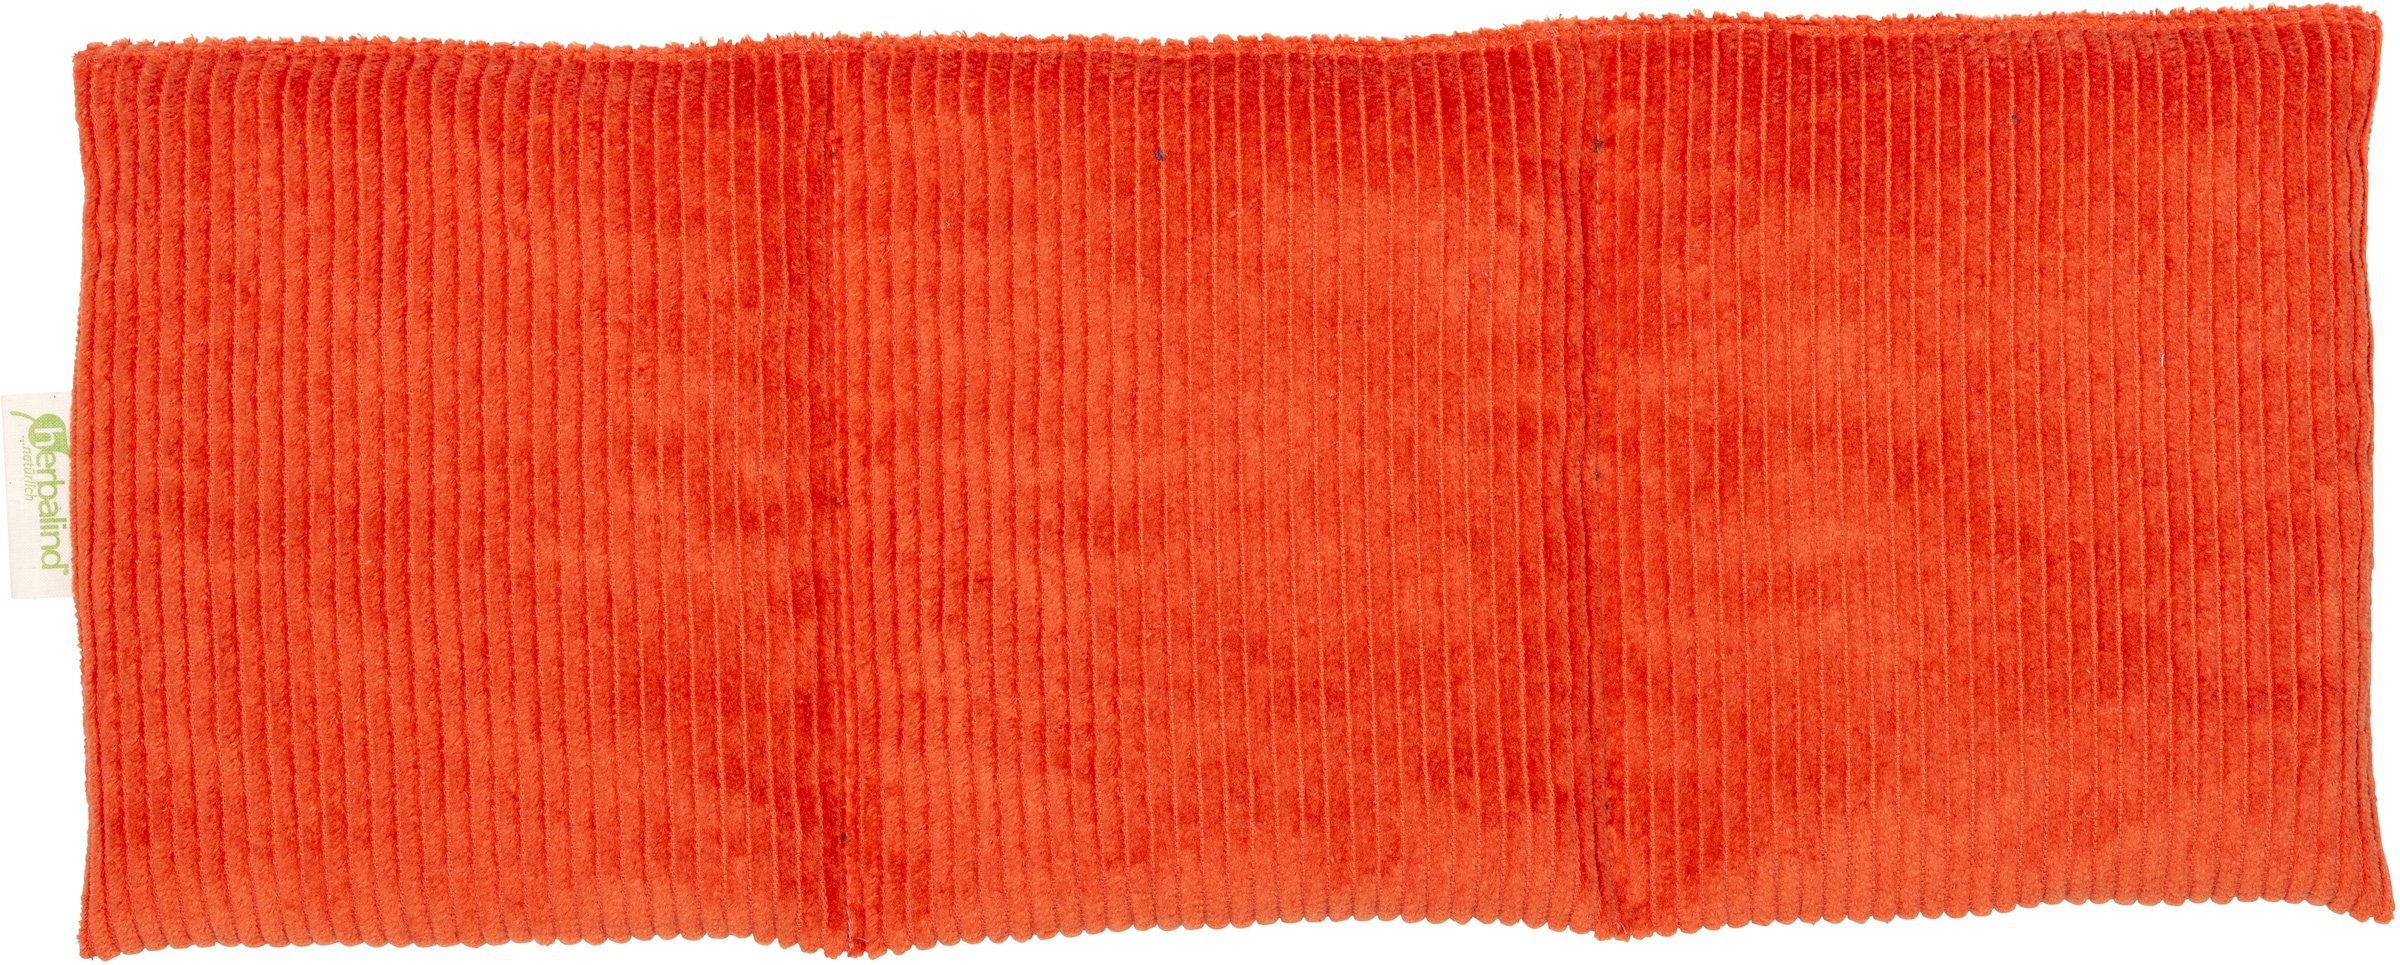 herbalind Kirschkernkissen »2094«, Wärmekissen 50x20 cm, Cord Orange, auch als Kältekissen verwendbar